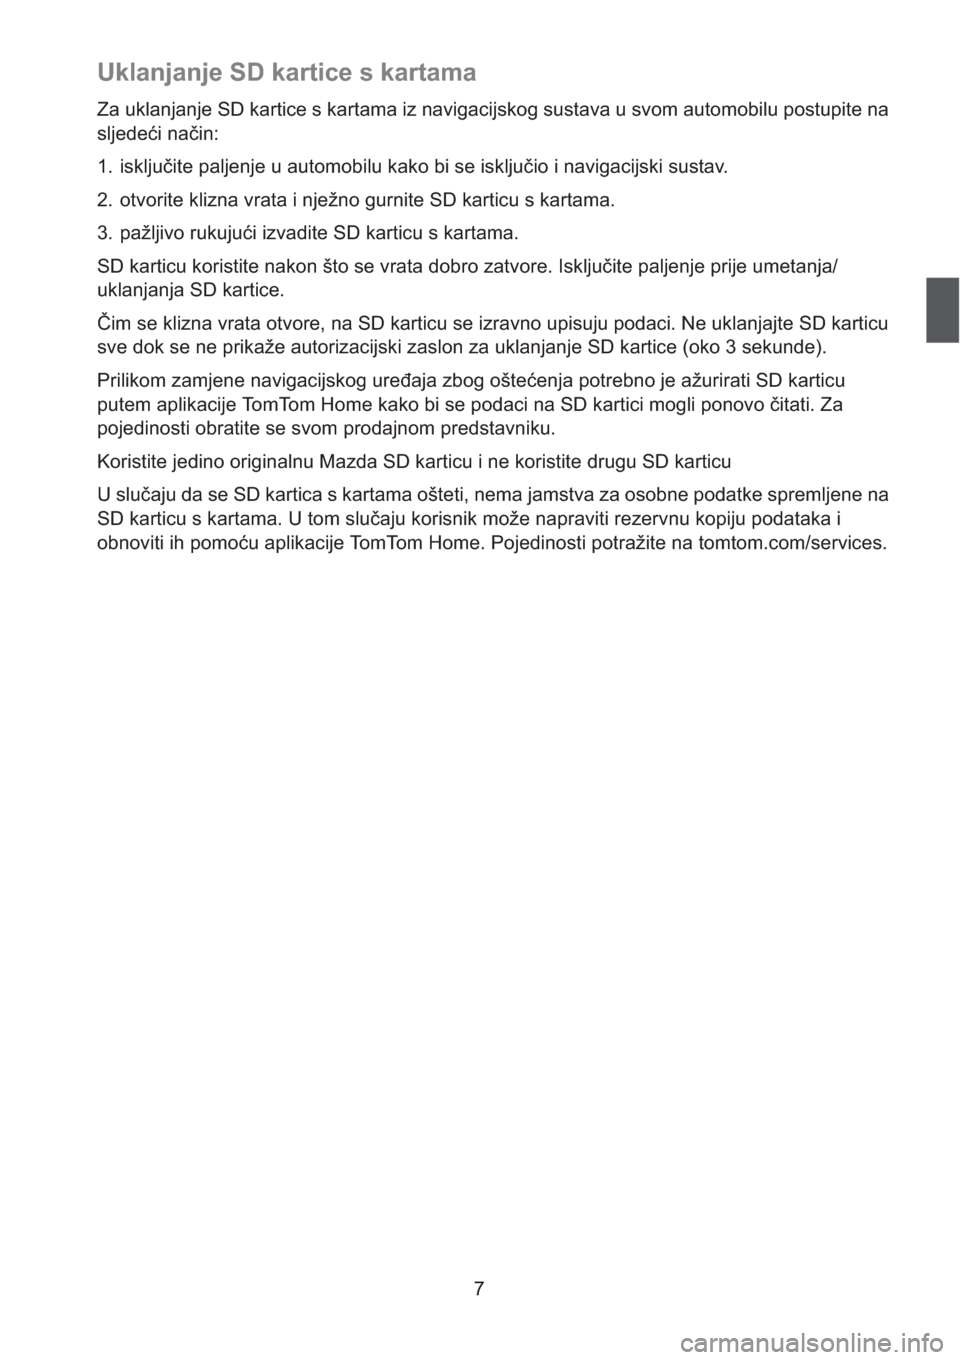 MAZDA MODEL CX-5 2013  Sustav za navigaciju (in Croatian) 7
Uklanjanje SD kartice s kartama
Za uklanjanje SD kartice s kartama iz navigacijskog sustava u svom automobilu postupite na 
sljedei nain:
1. iskljuite paljenje u automobilu kako bi se iskljuio i